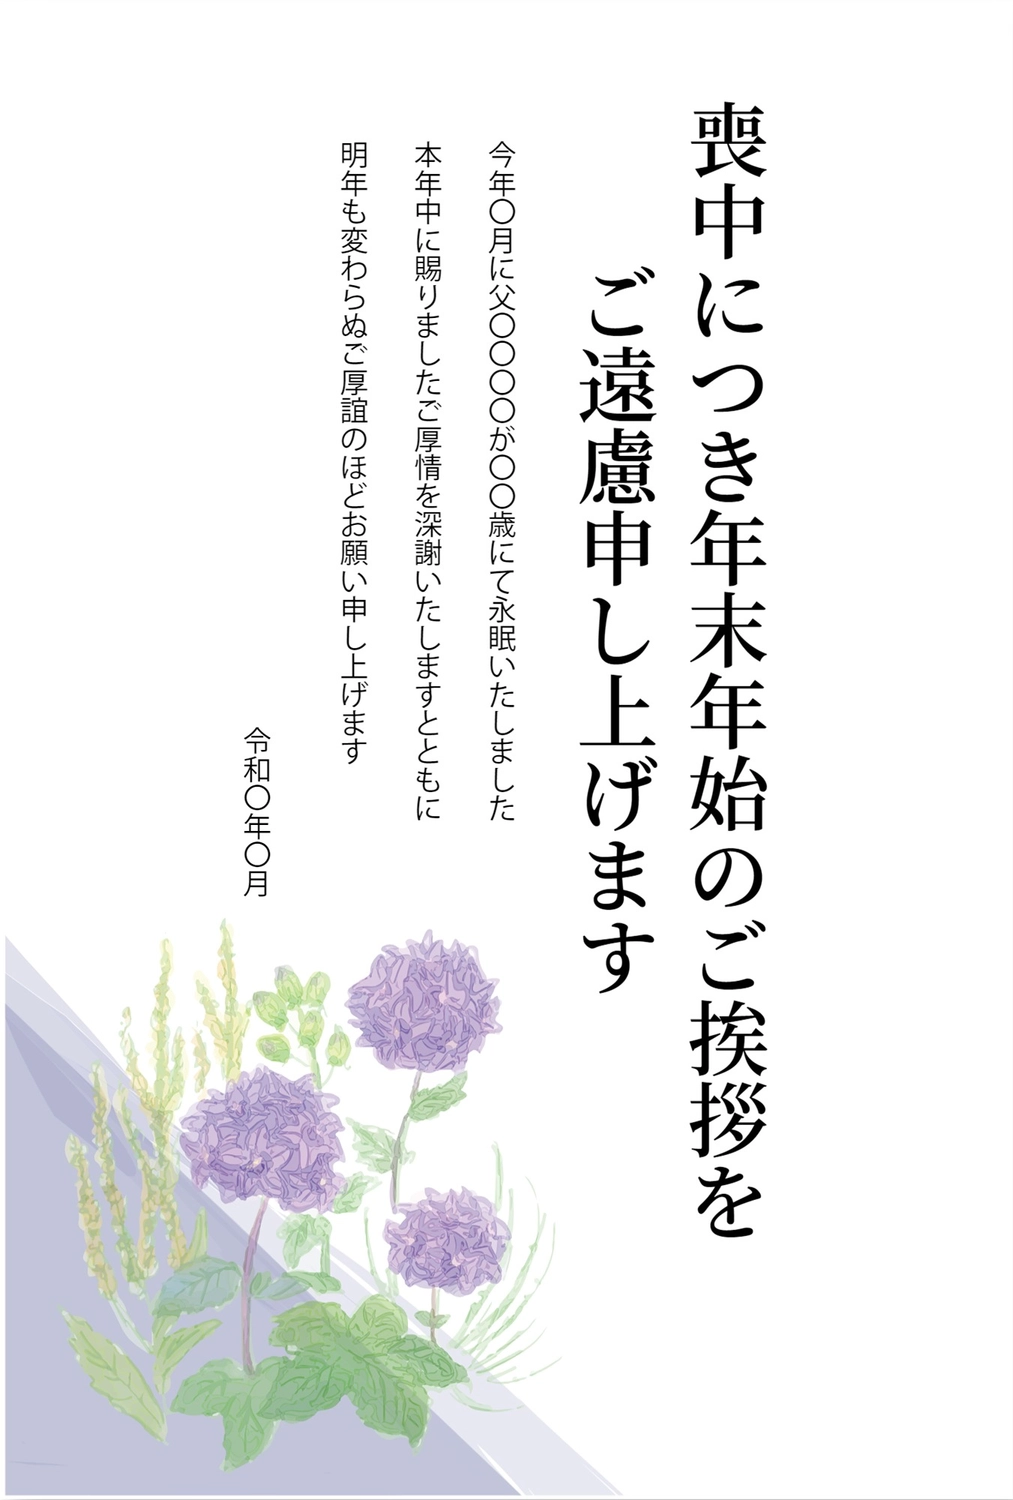 紫色の花の喪中はがき, New Year's greeting card, purple flower, death, Mourning Postcard template